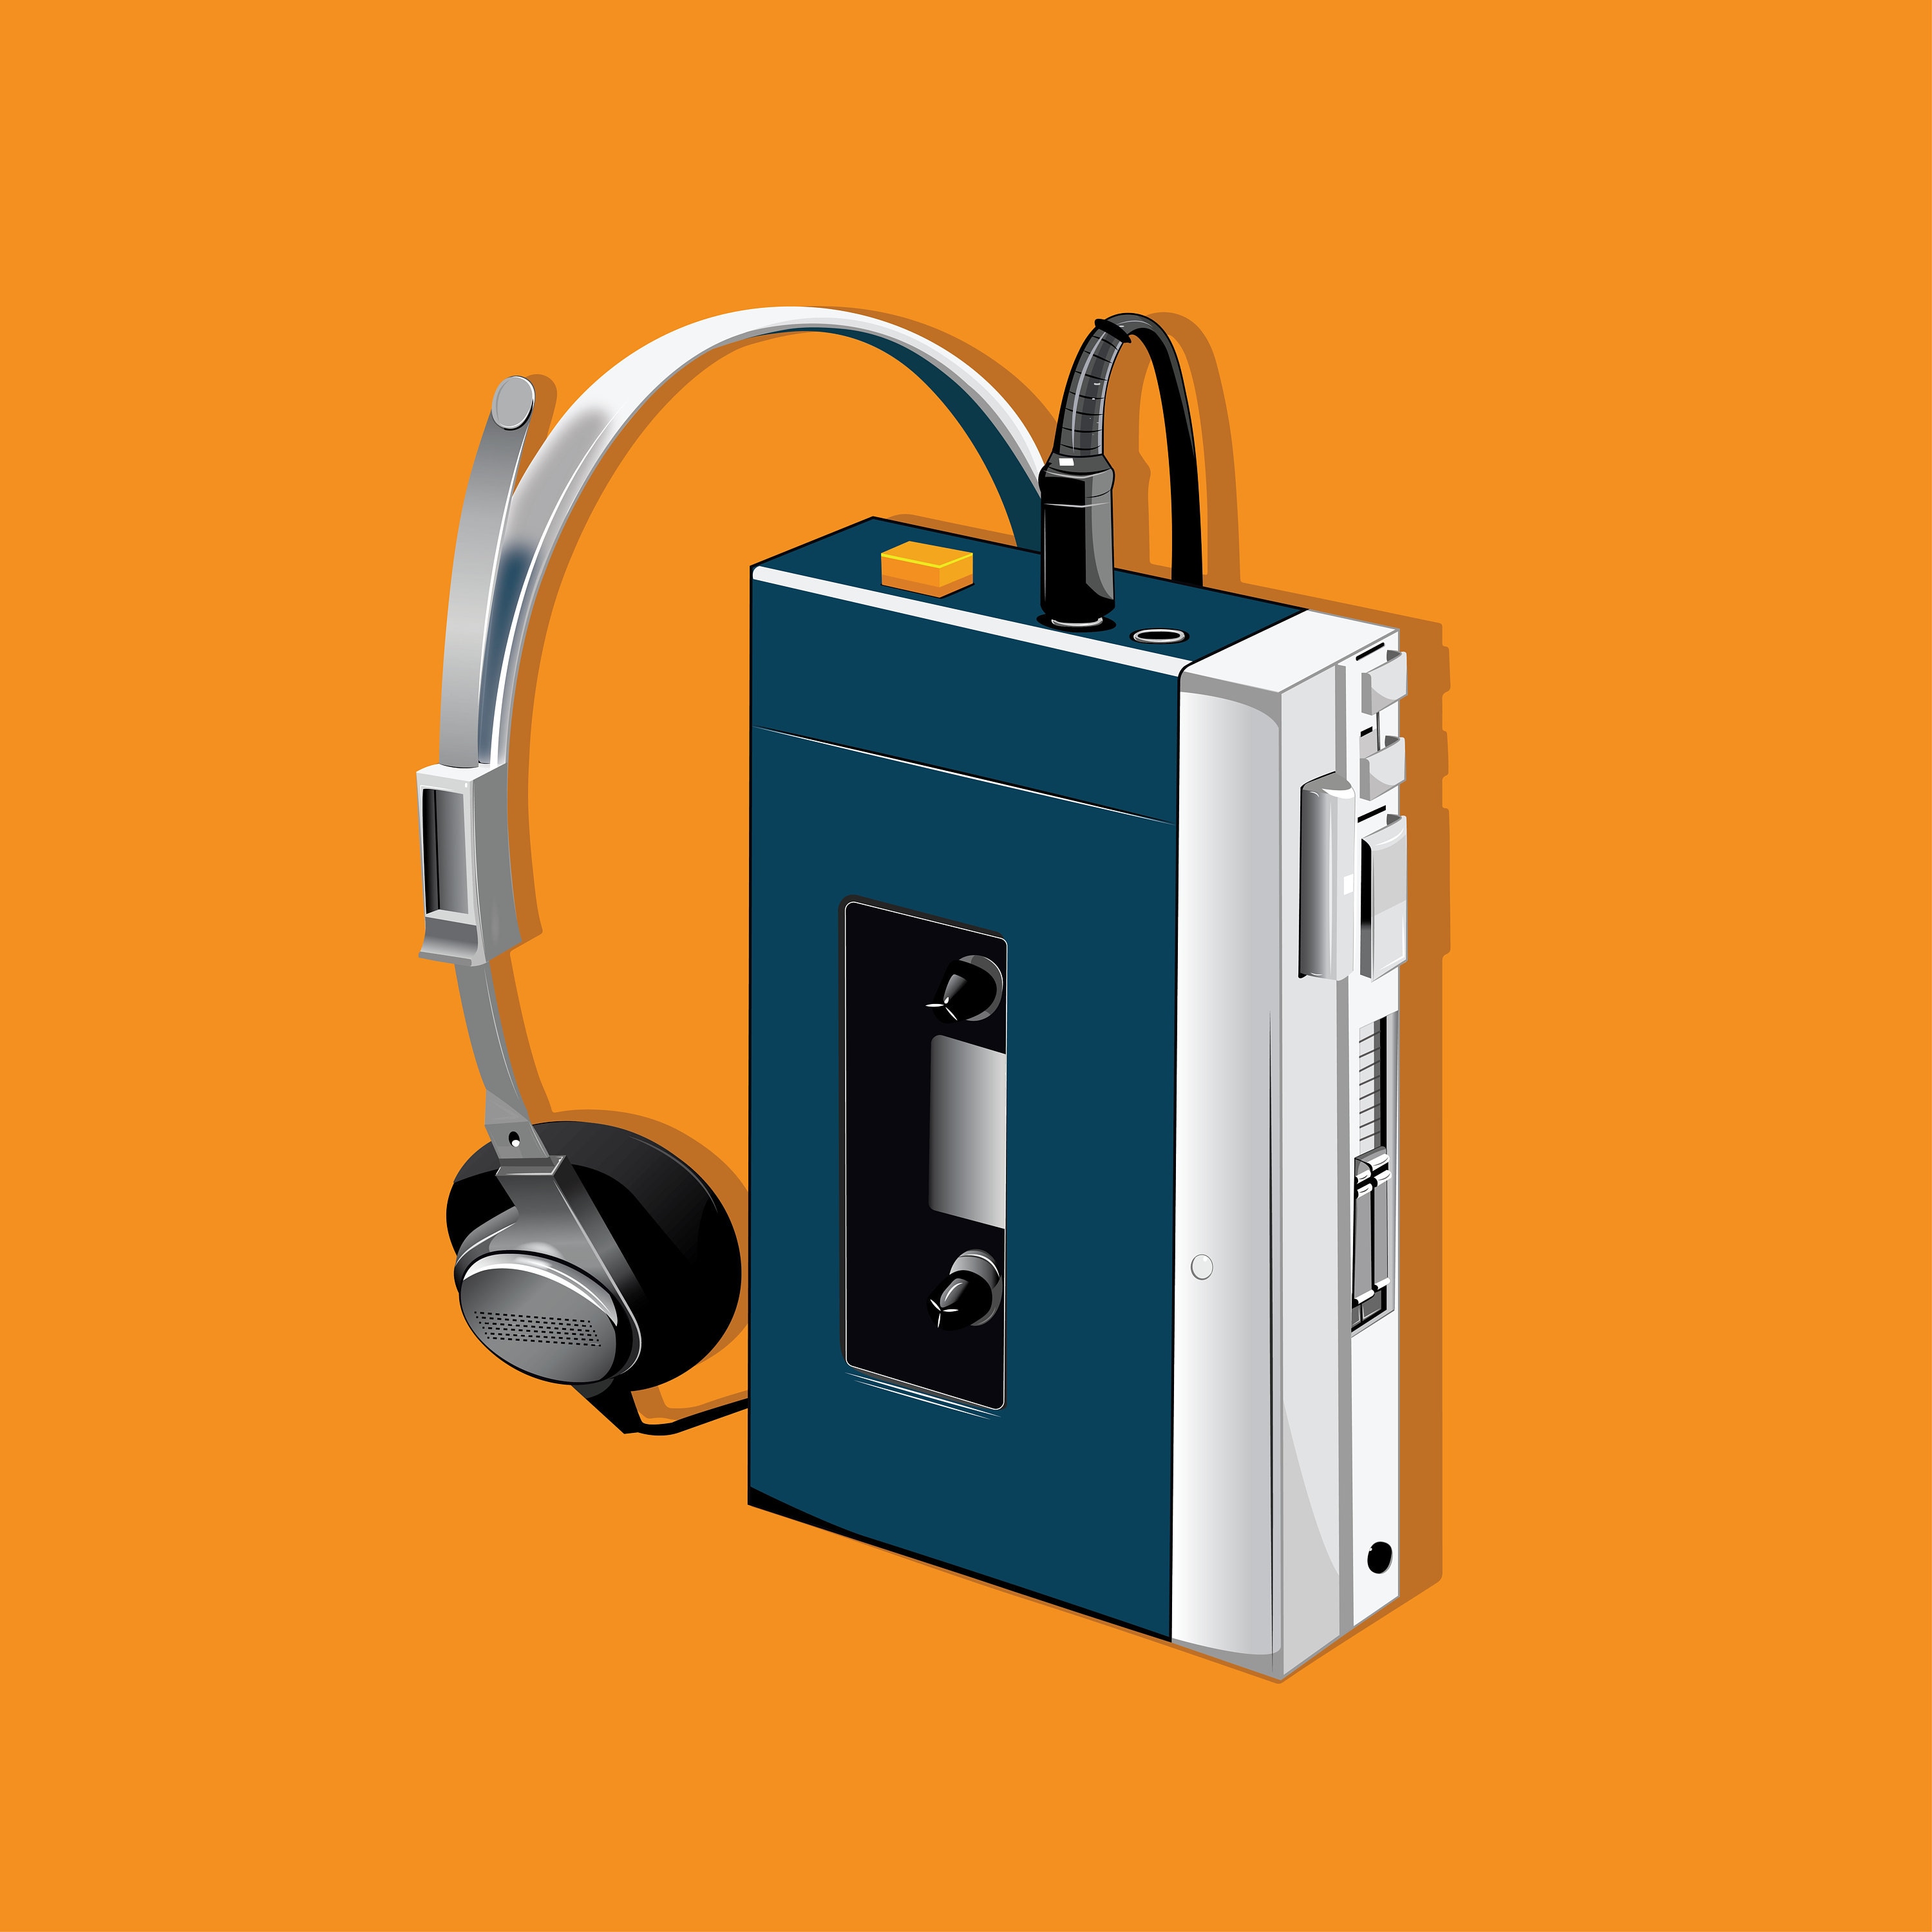 Le Walkman, la musique en solo des Années 80 ! !! 